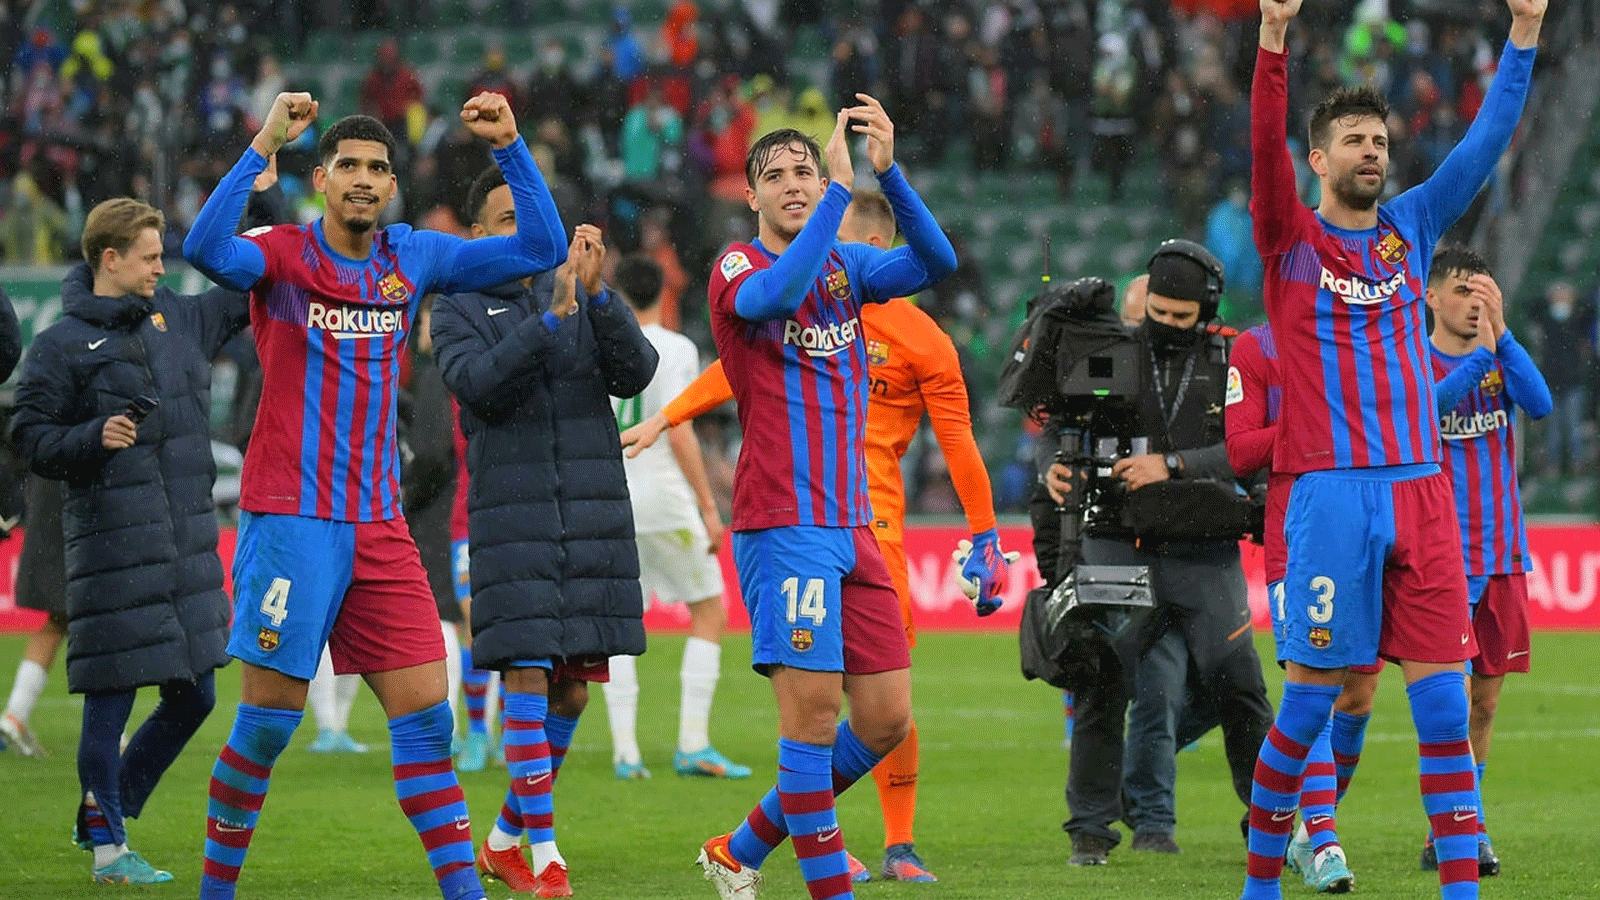 لاعبو برشلونة يحتفلون بالفوز على فريق إلتشي في الدوري الاسباني لكرة القدم على ملعب مارتينيس فاليرو في 6 آذار/مارس 2022 